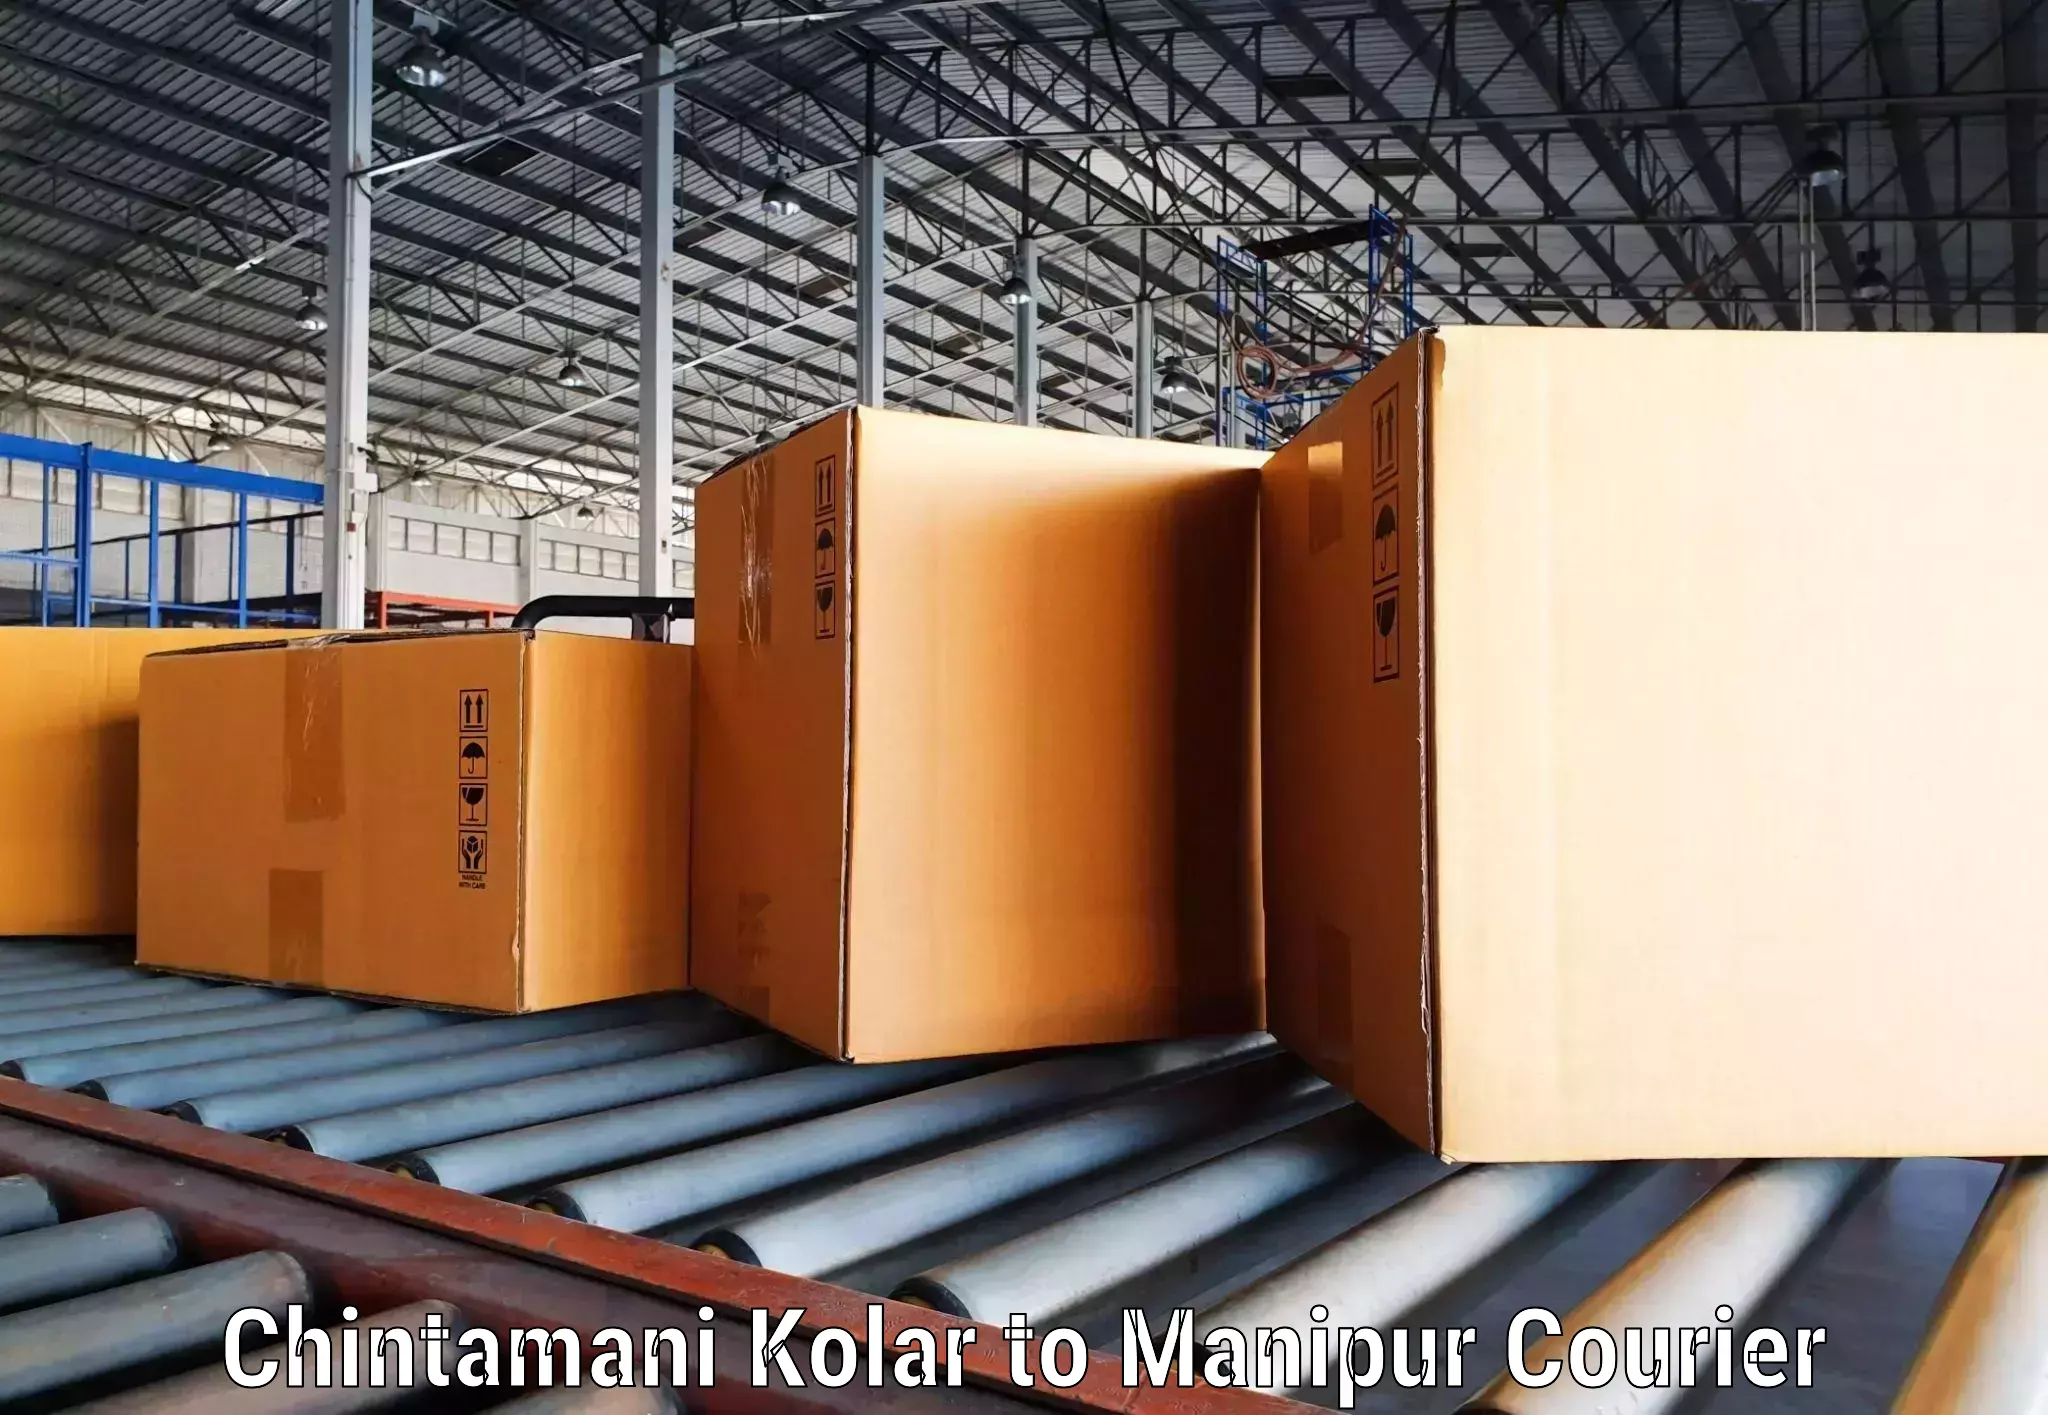 High-performance logistics in Chintamani Kolar to Kanti